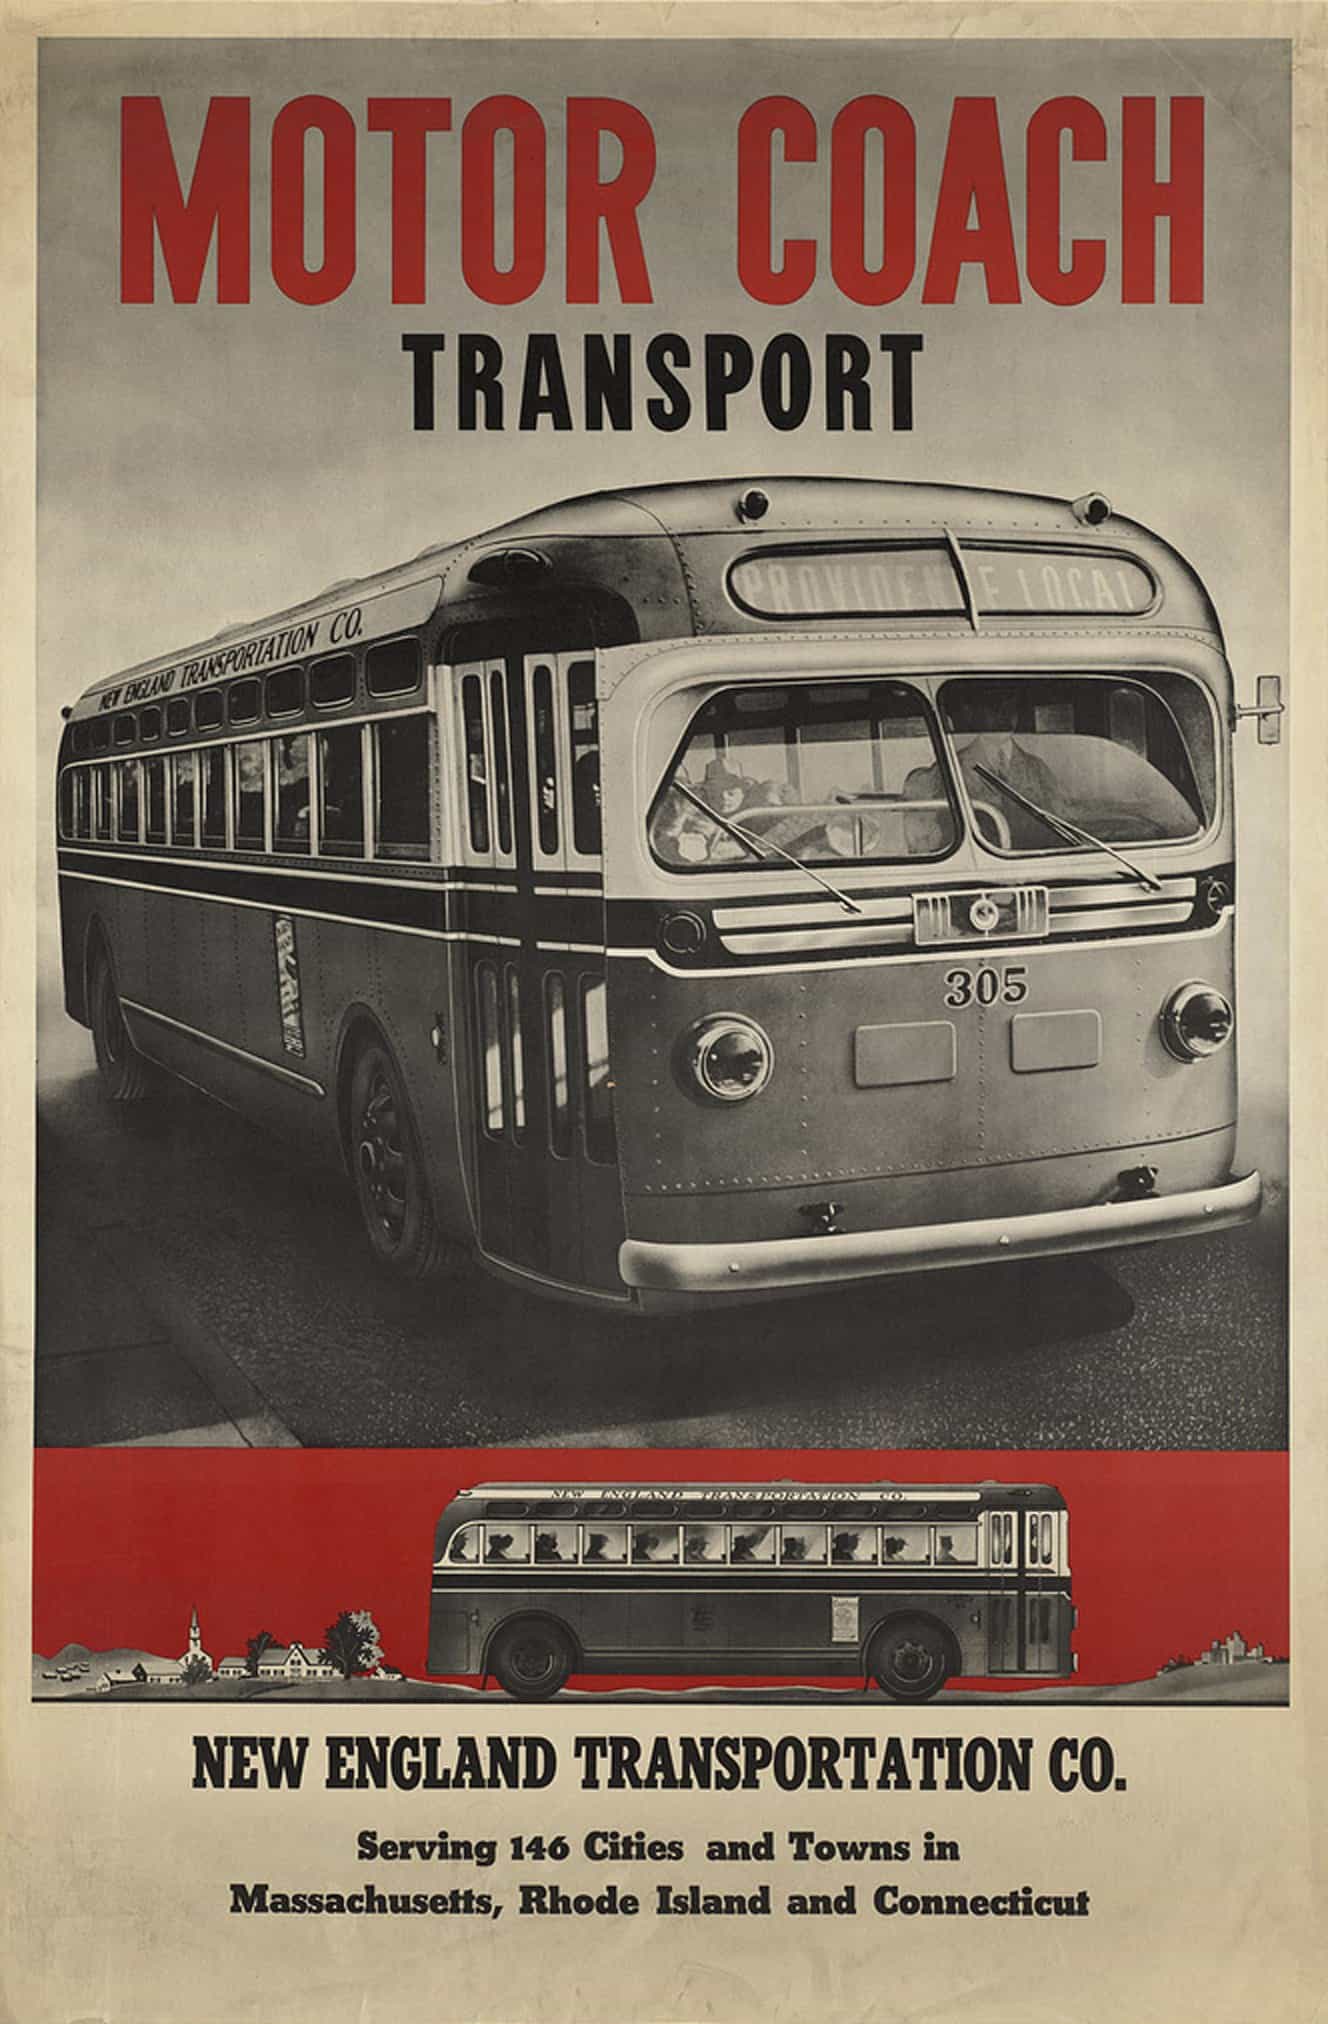 Motor Coach Transport 1940s Vintage Travel Poster